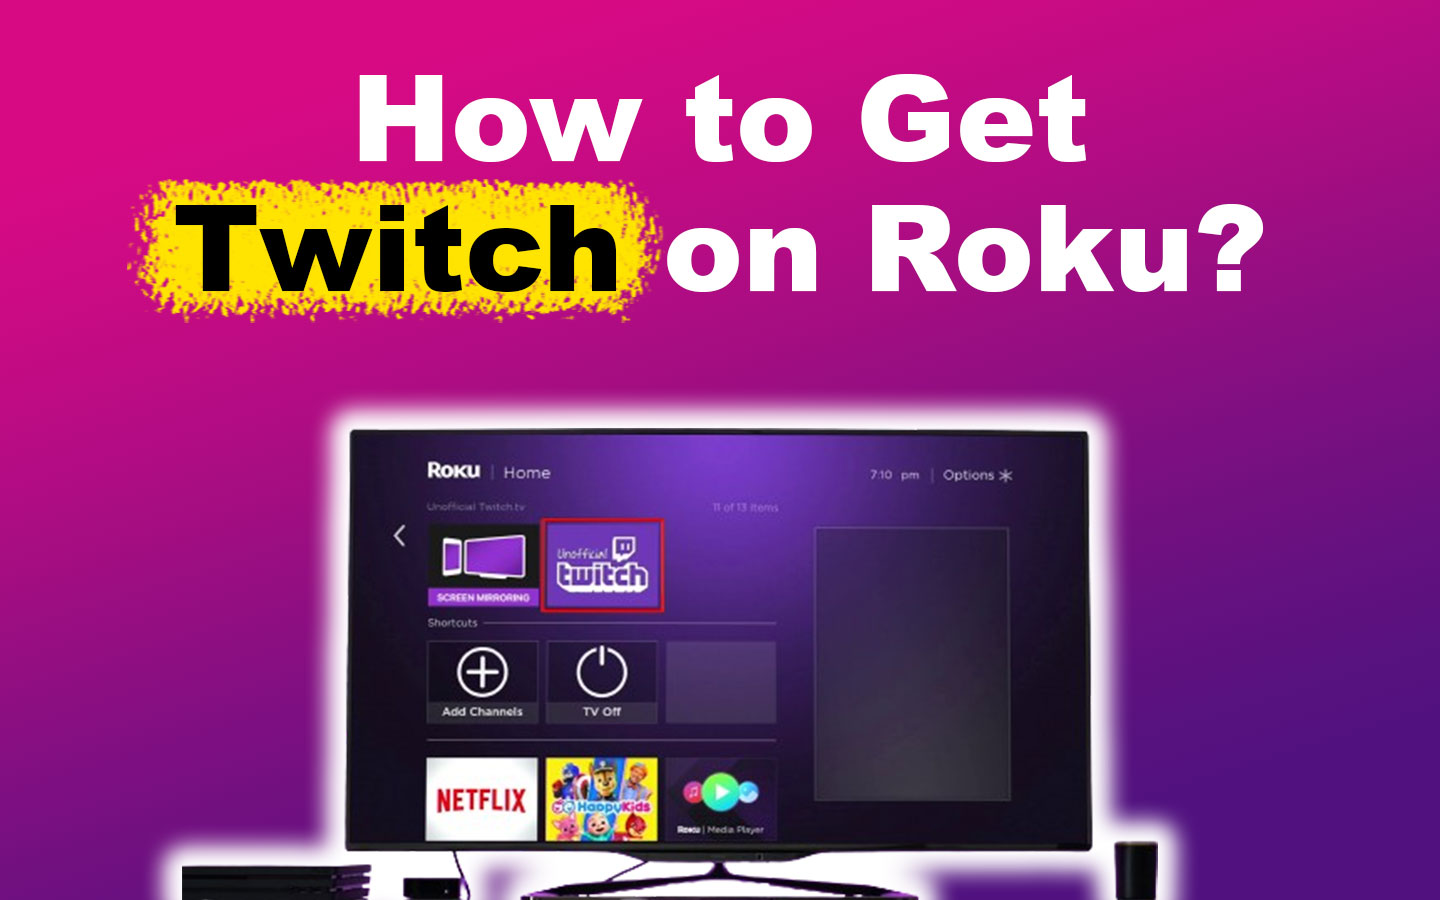 How to Get Twitch on Roku [2 Best Ways]